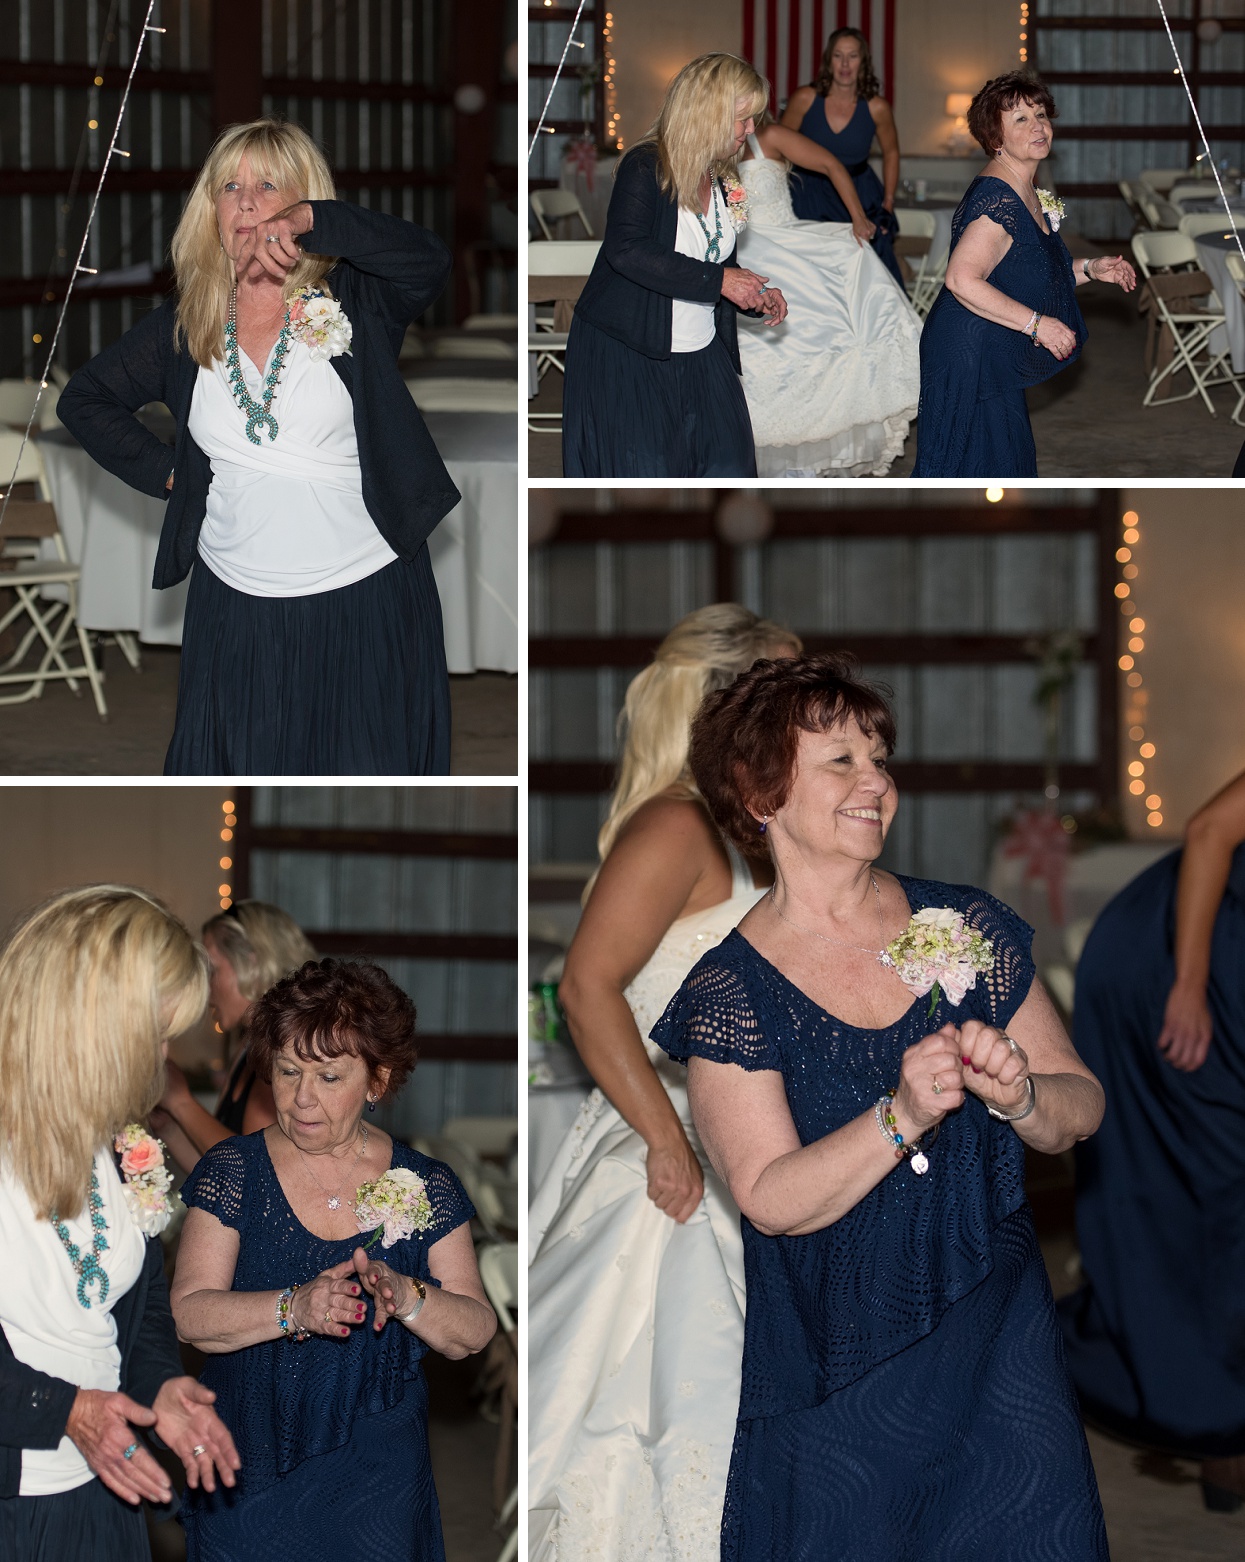 Grandmas line dancing at wedding